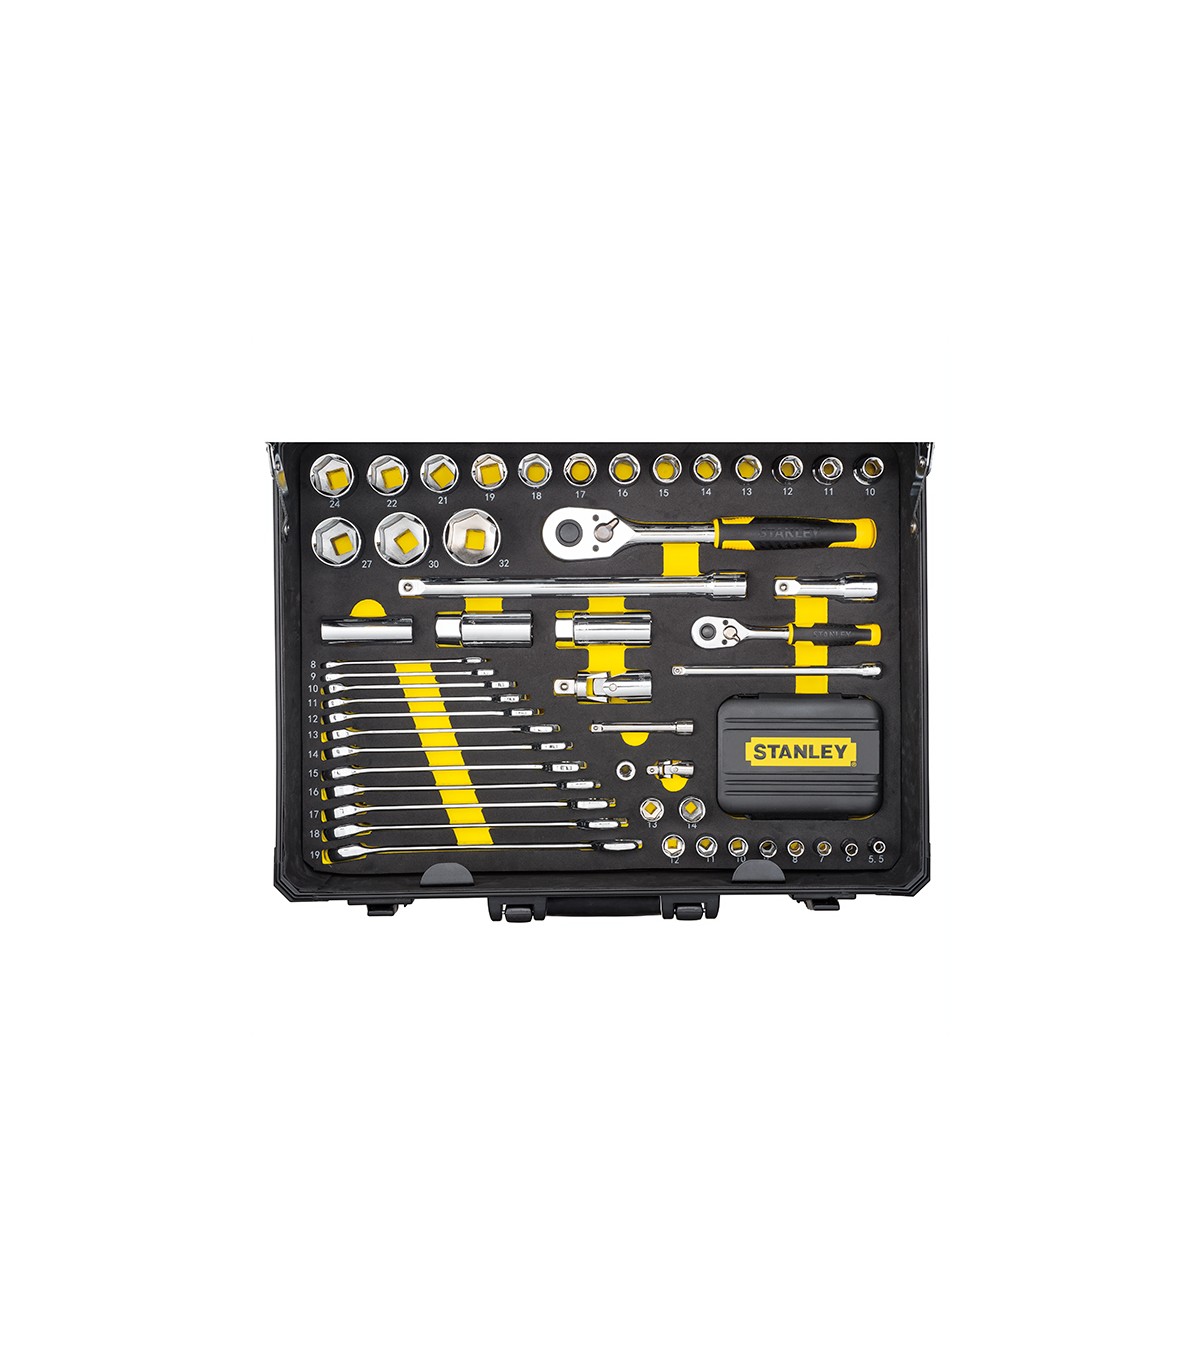 STMT98109-1, Valise de maintenance Stanley outils et outillage - 142  pièces